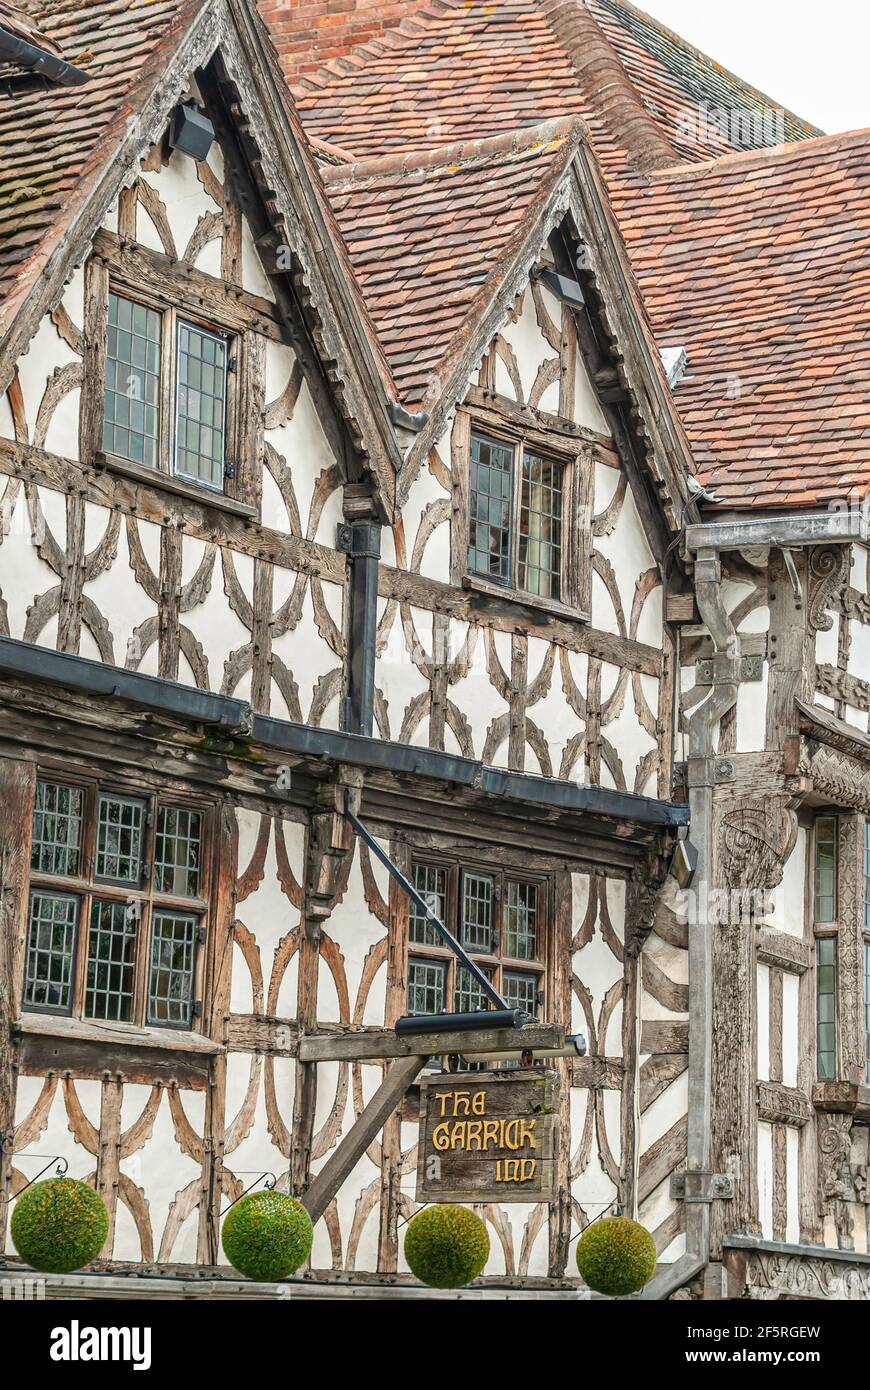 Fassade des alten Garrick Inn Pub in Stratford upon Avon, Warwickshire, England, Großbritannien Stockfoto